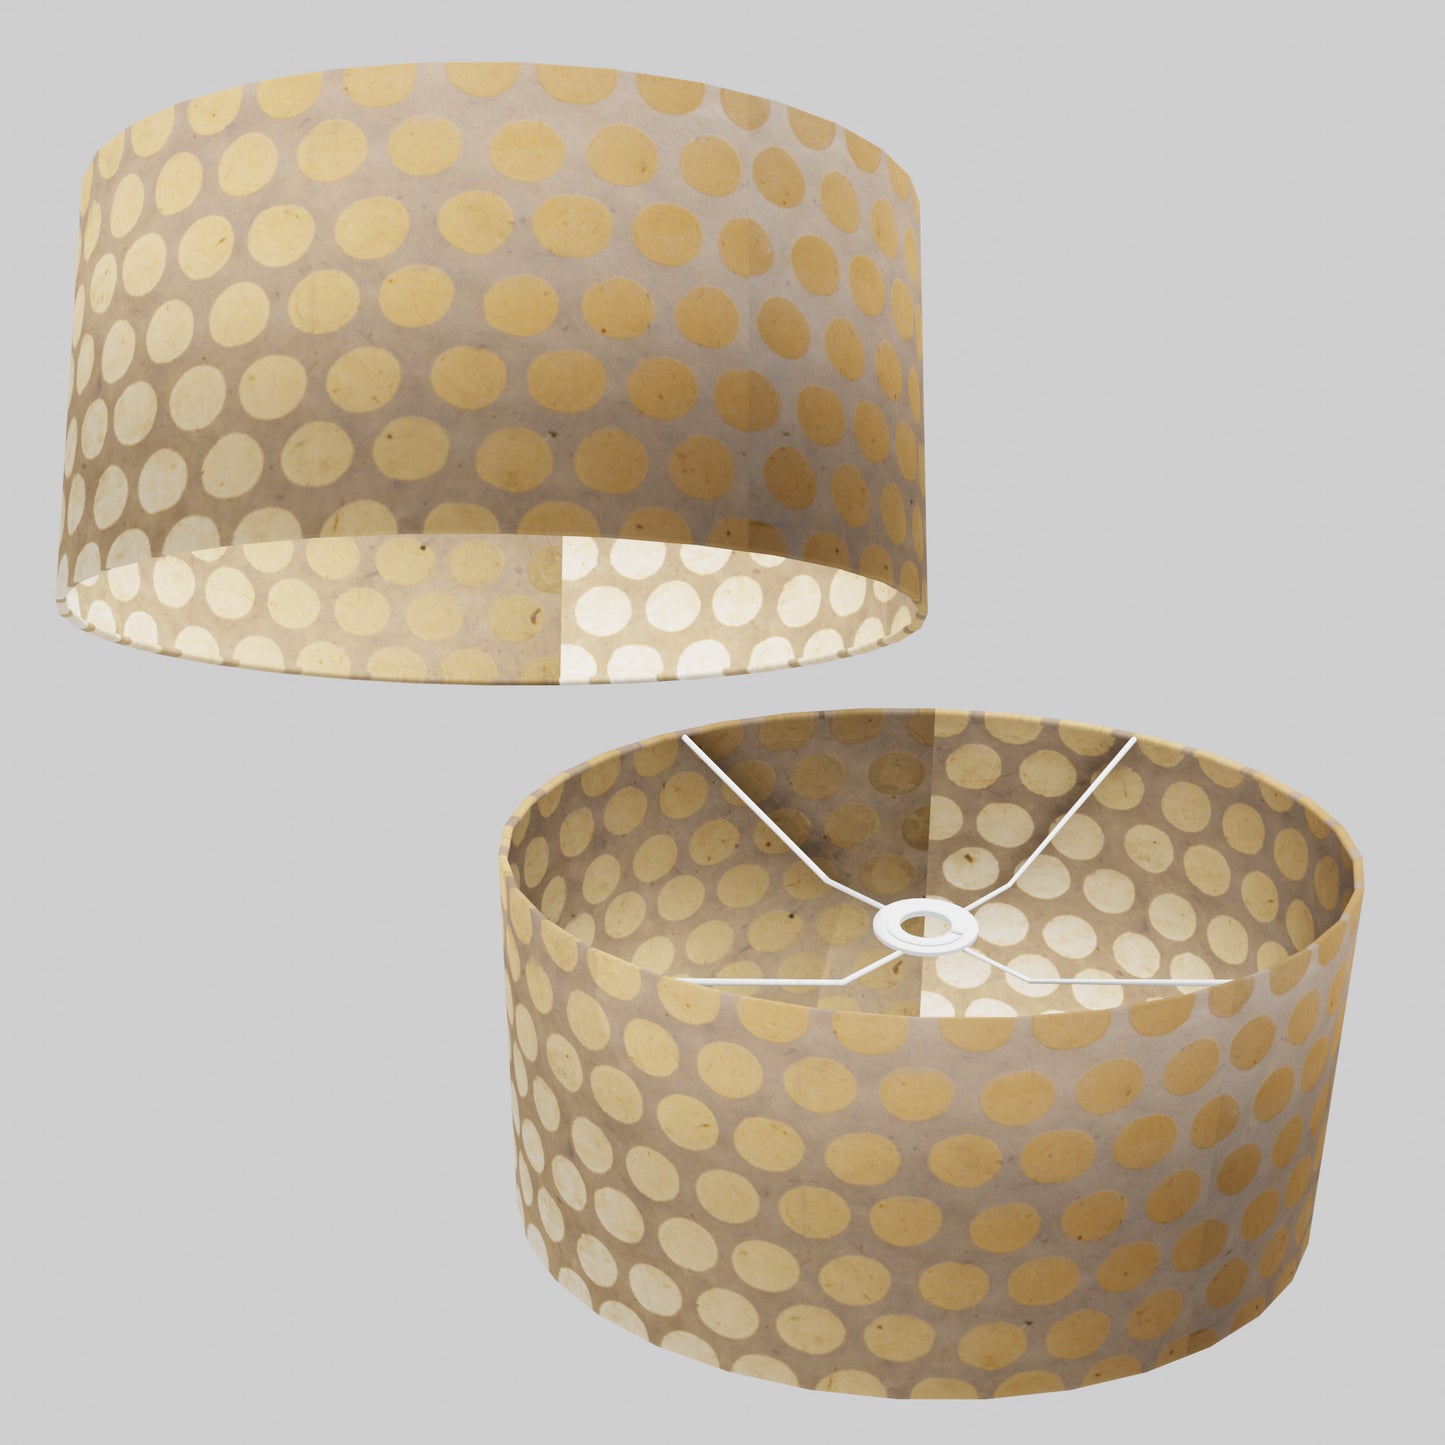 Oval Lamp Shade - P85 ~ Batik Dots on Natural, 40cm(w) x 20cm(h) x 30cm(d)